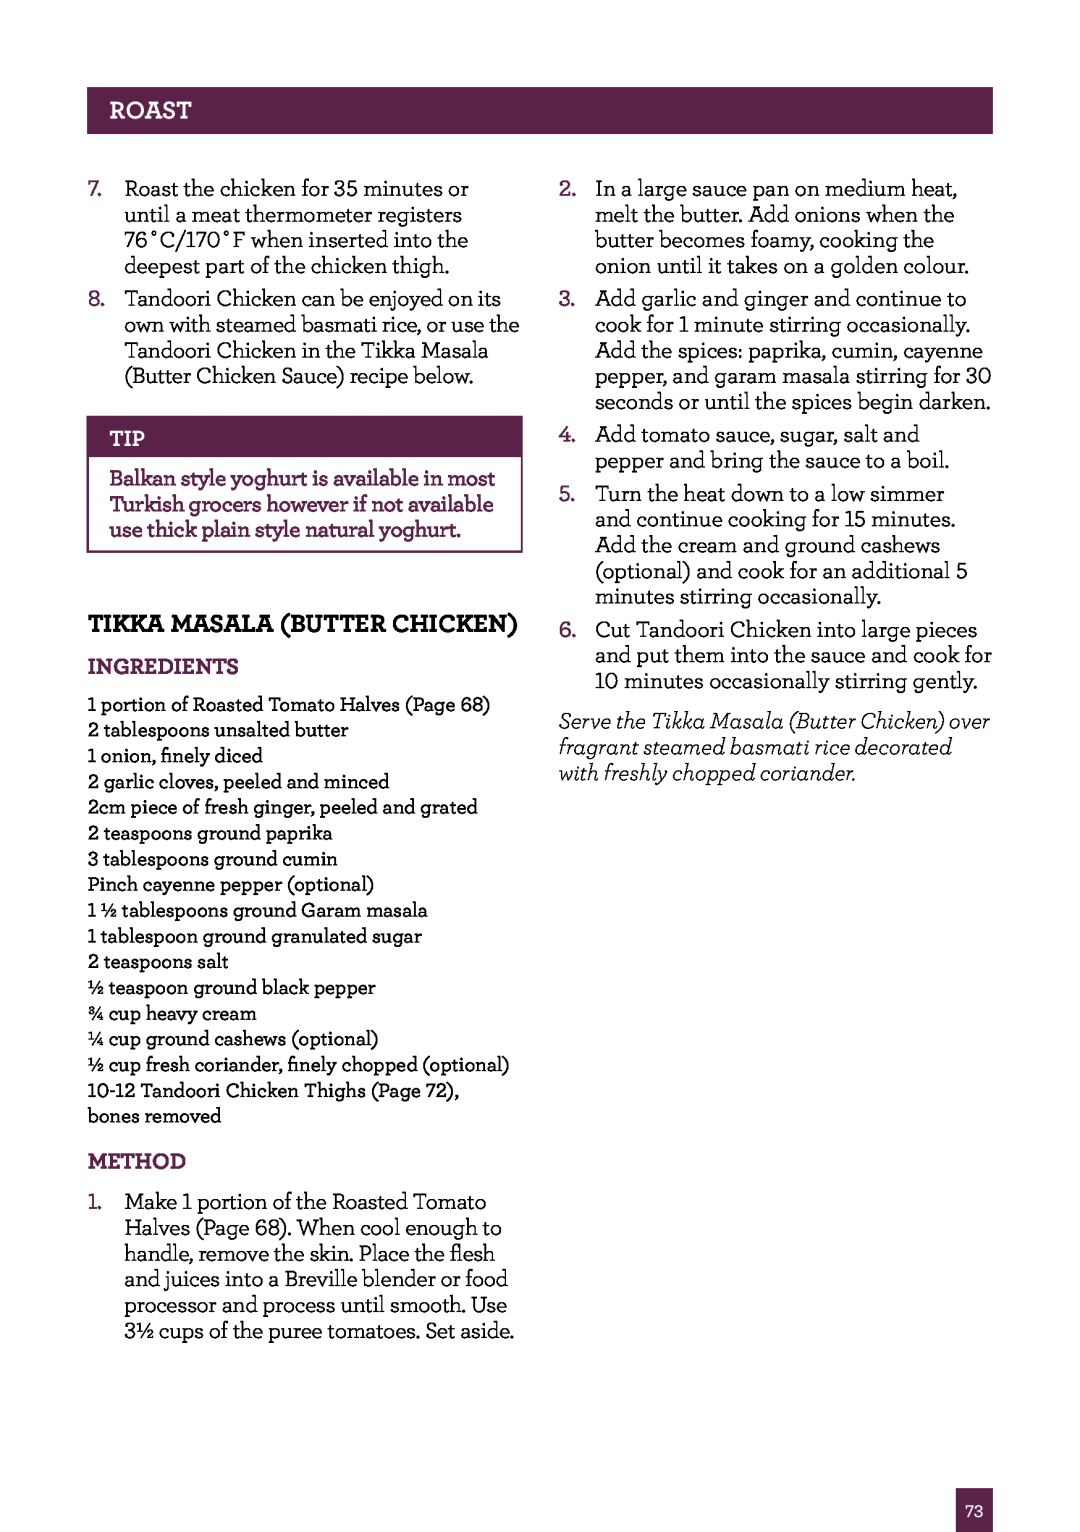 Breville BOV800 manual Tikka Masala Butter Chicken, Roast, Ingredients, Method 